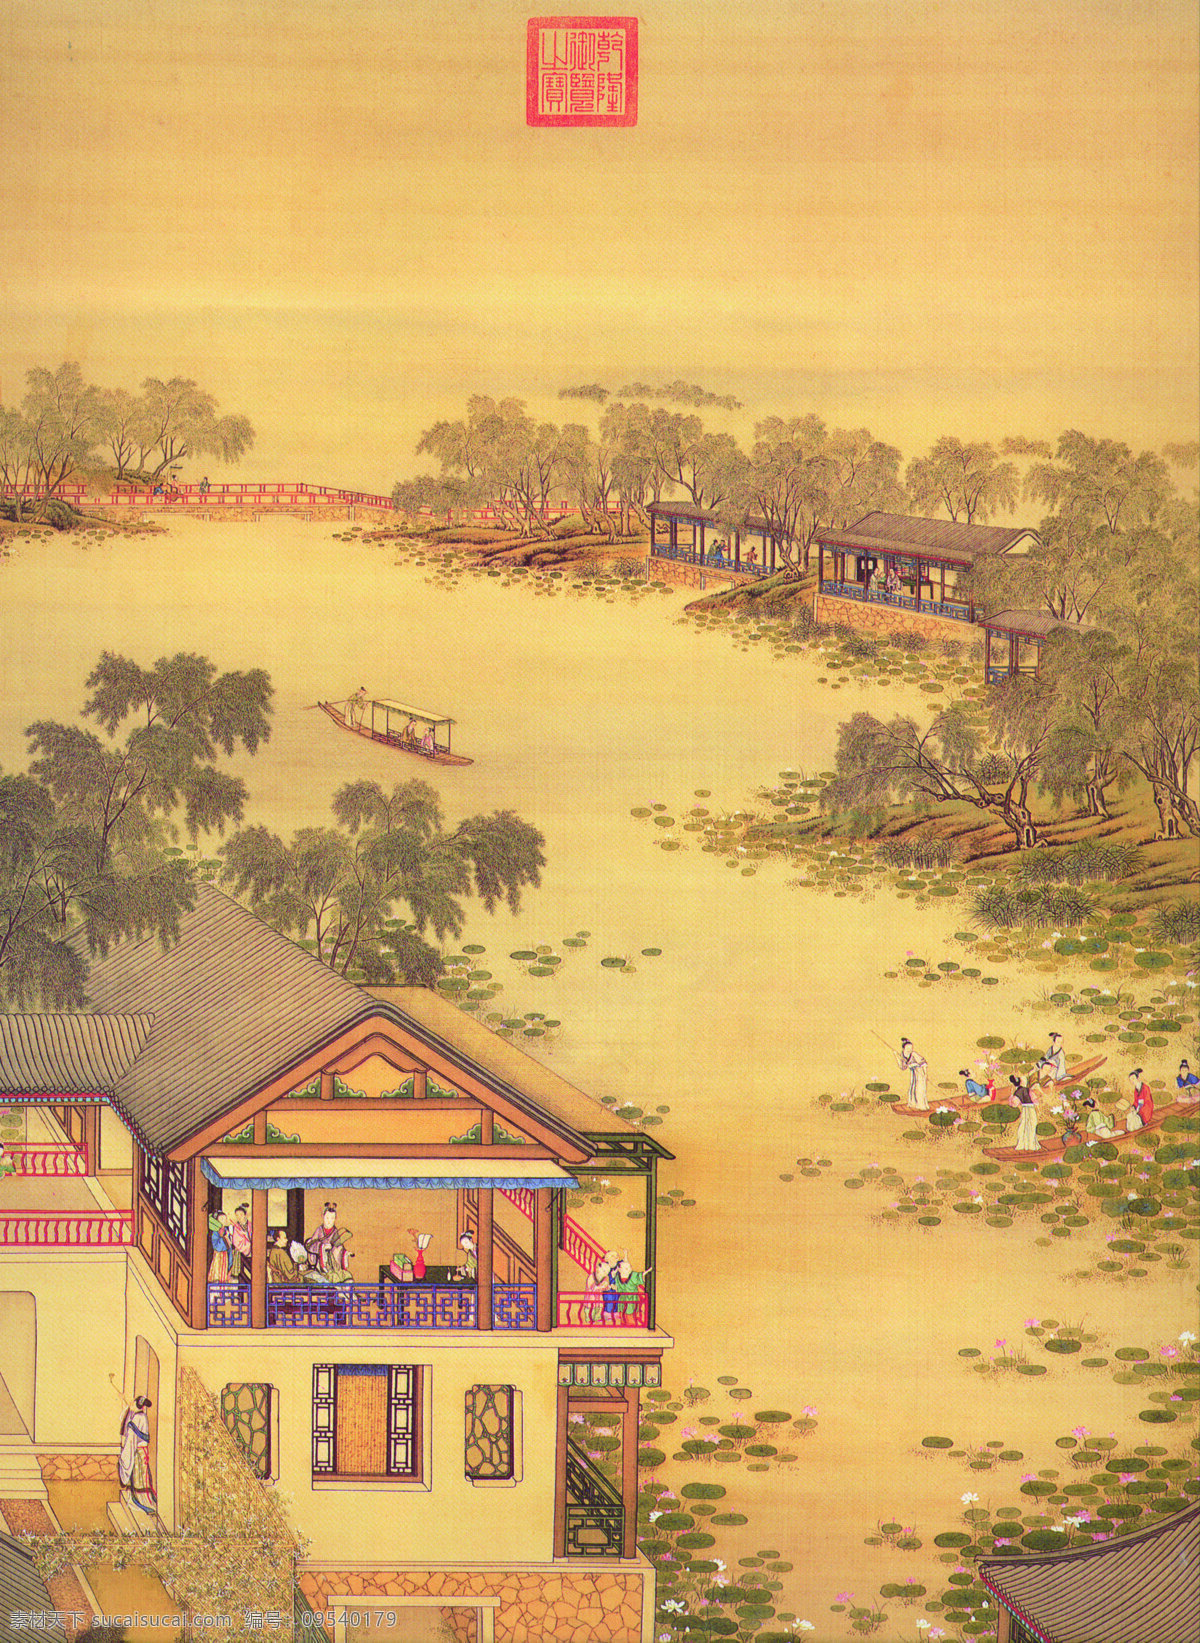 古画 古代 国画 山水画 古代建筑 国画风景 人物 中国古代 古图 绘画书法 文化艺术